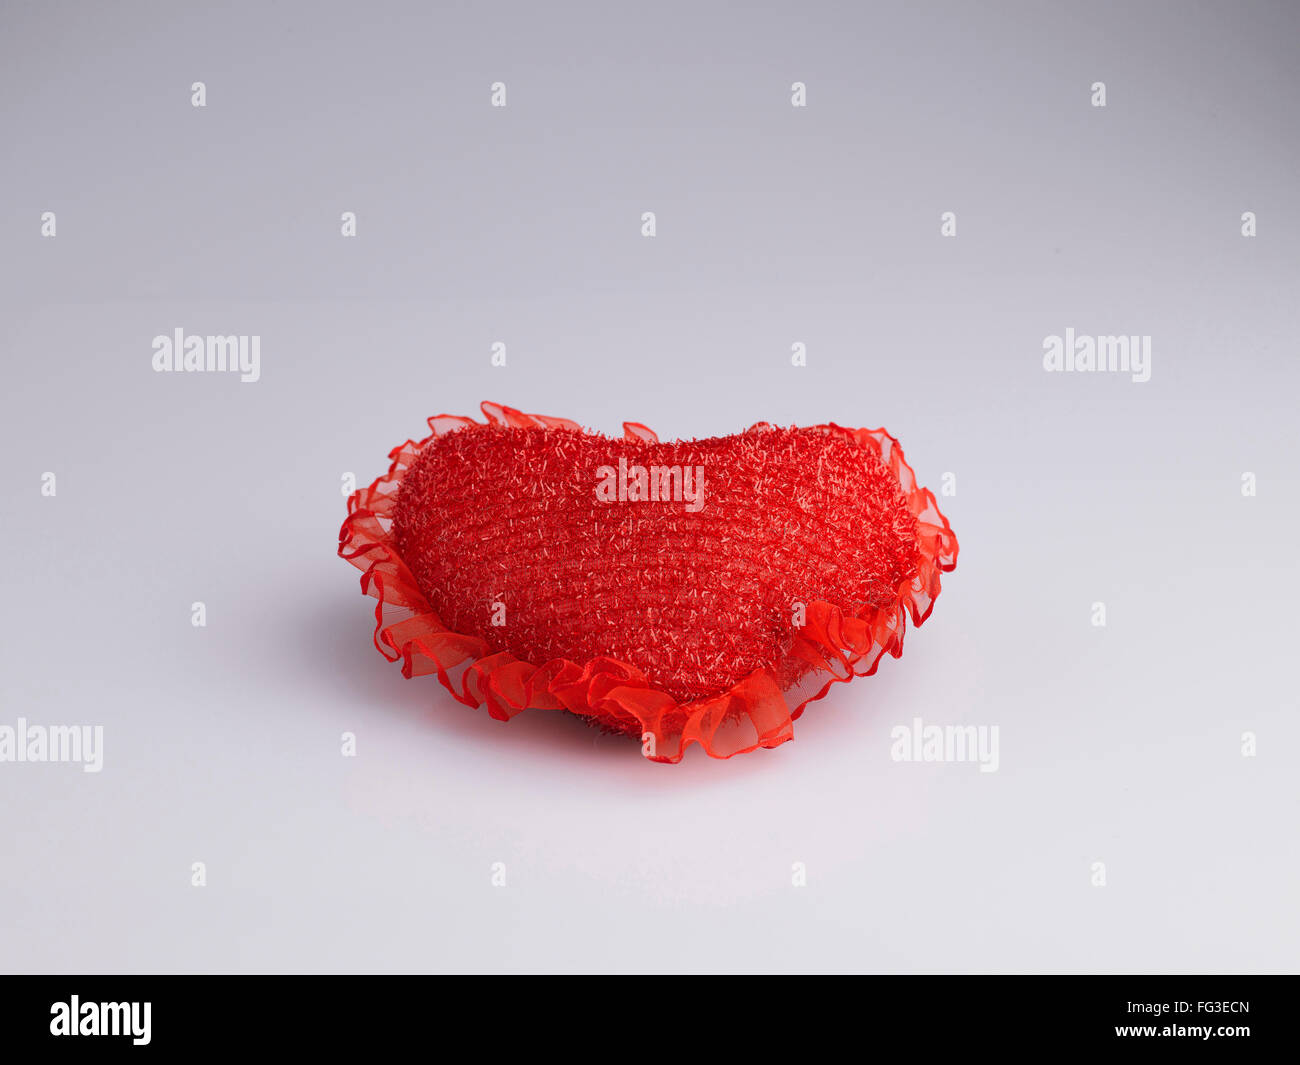 Coussin en forme de coeur de couleur rouge sur fond blanc Banque D'Images